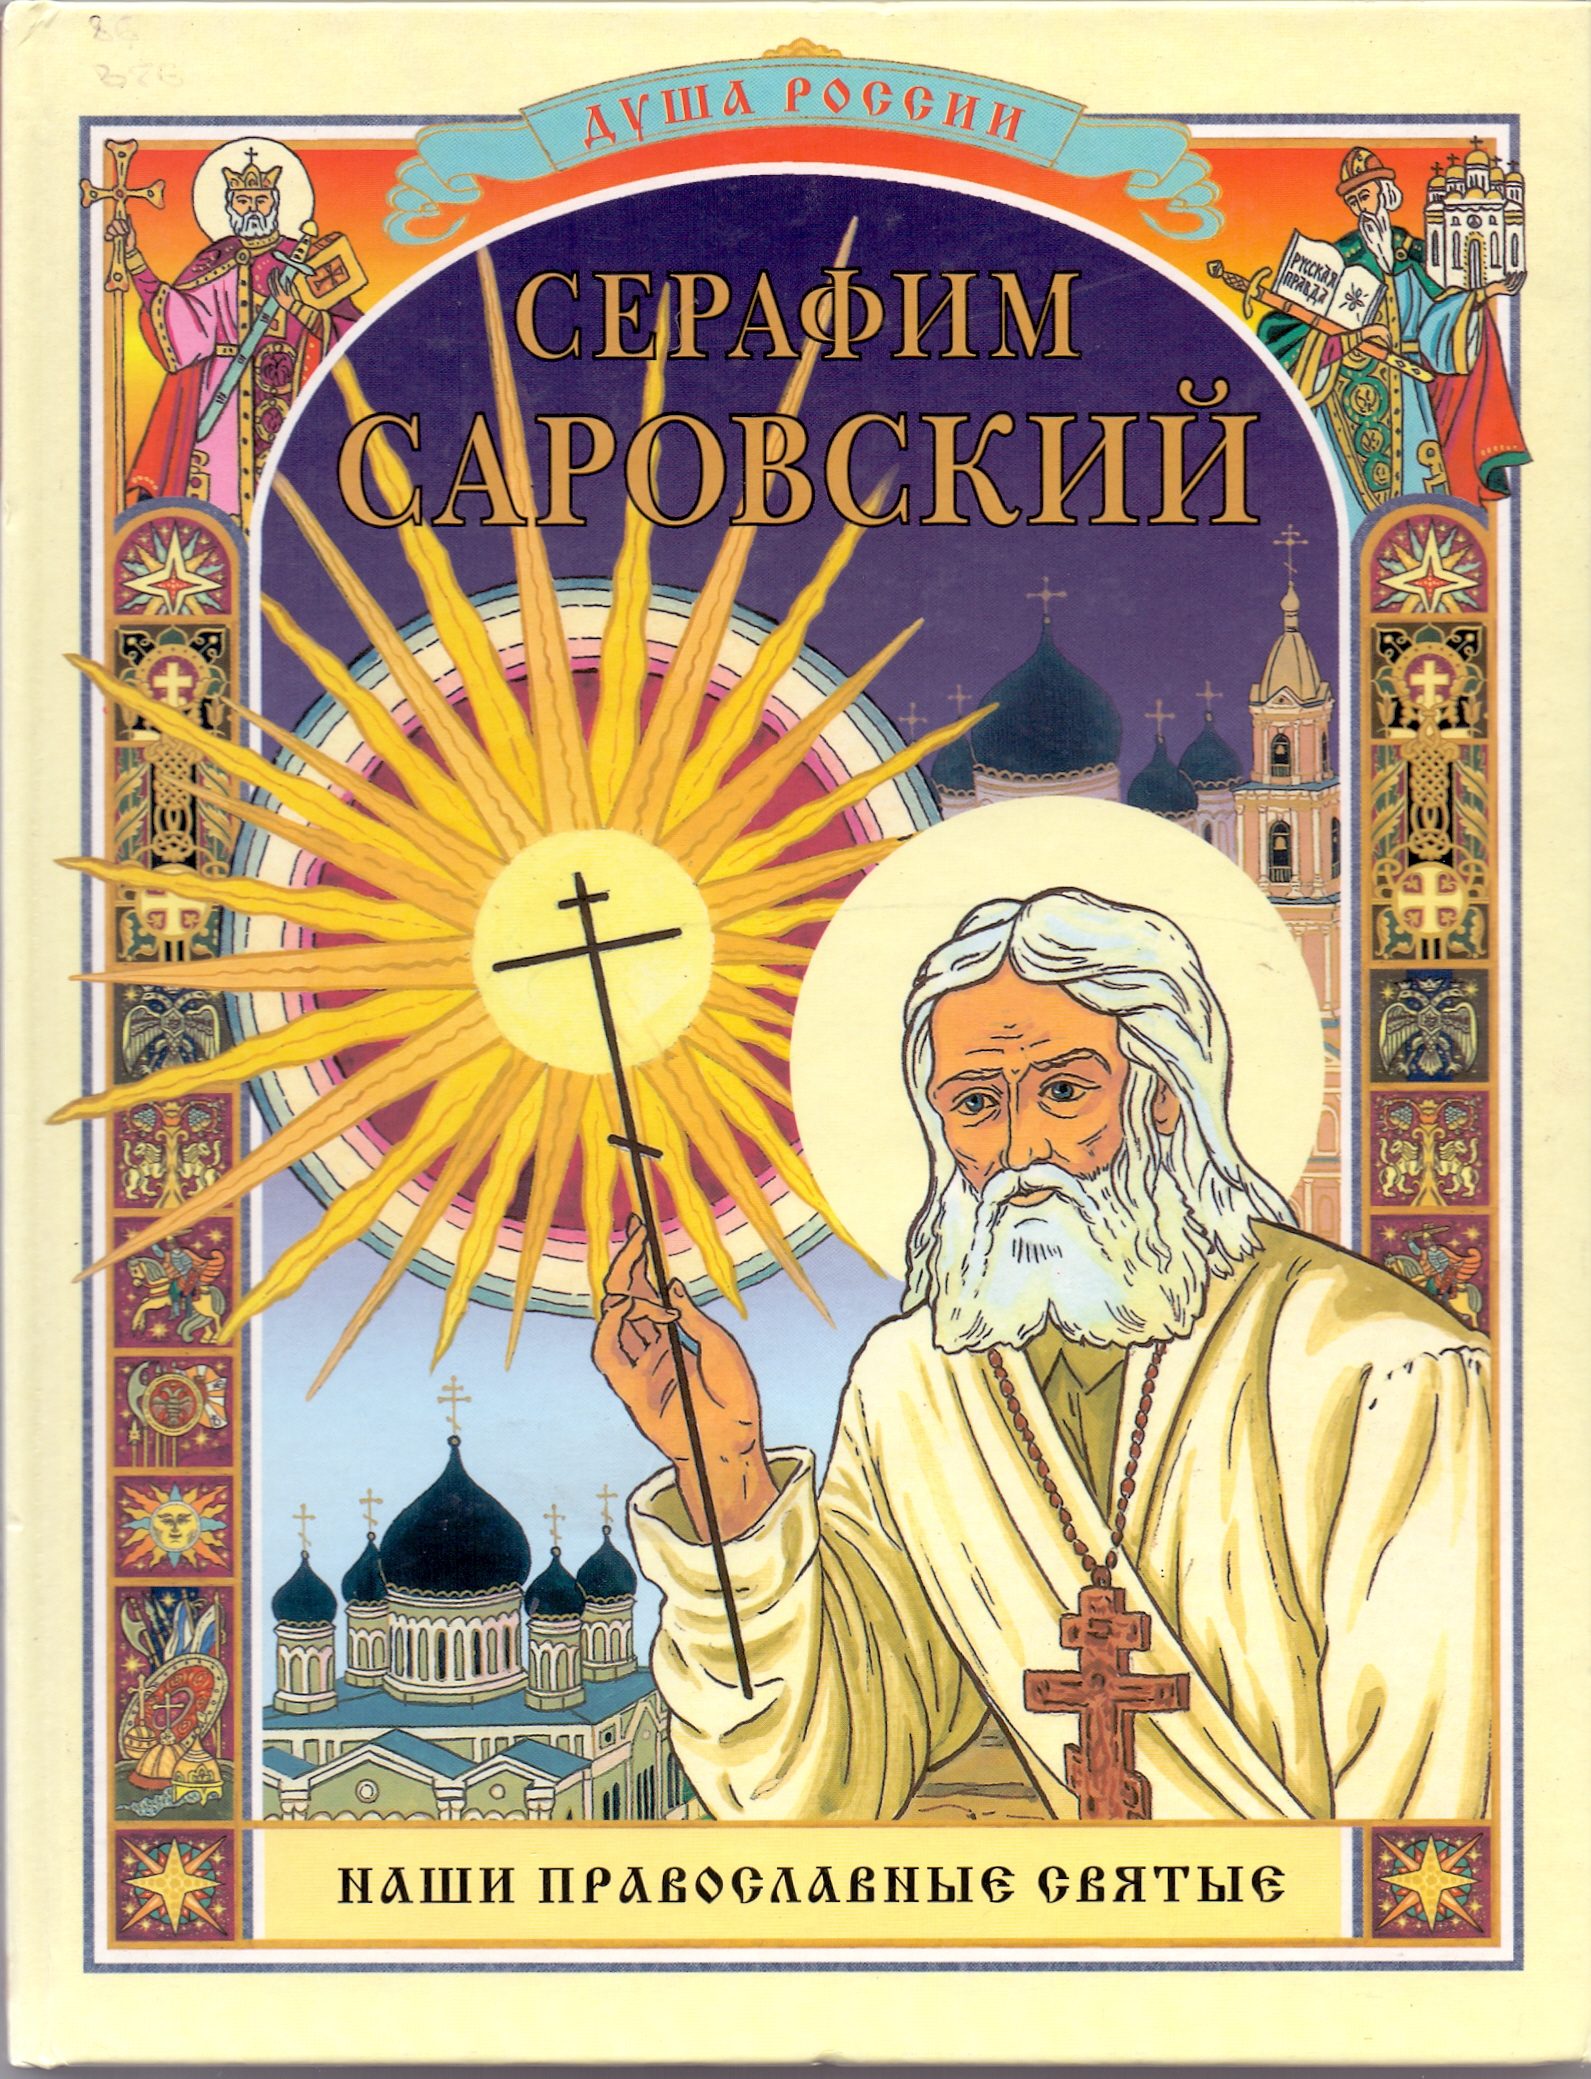 Книги про святых. Книги о Серафиме Саровском. Обложка православной книги.